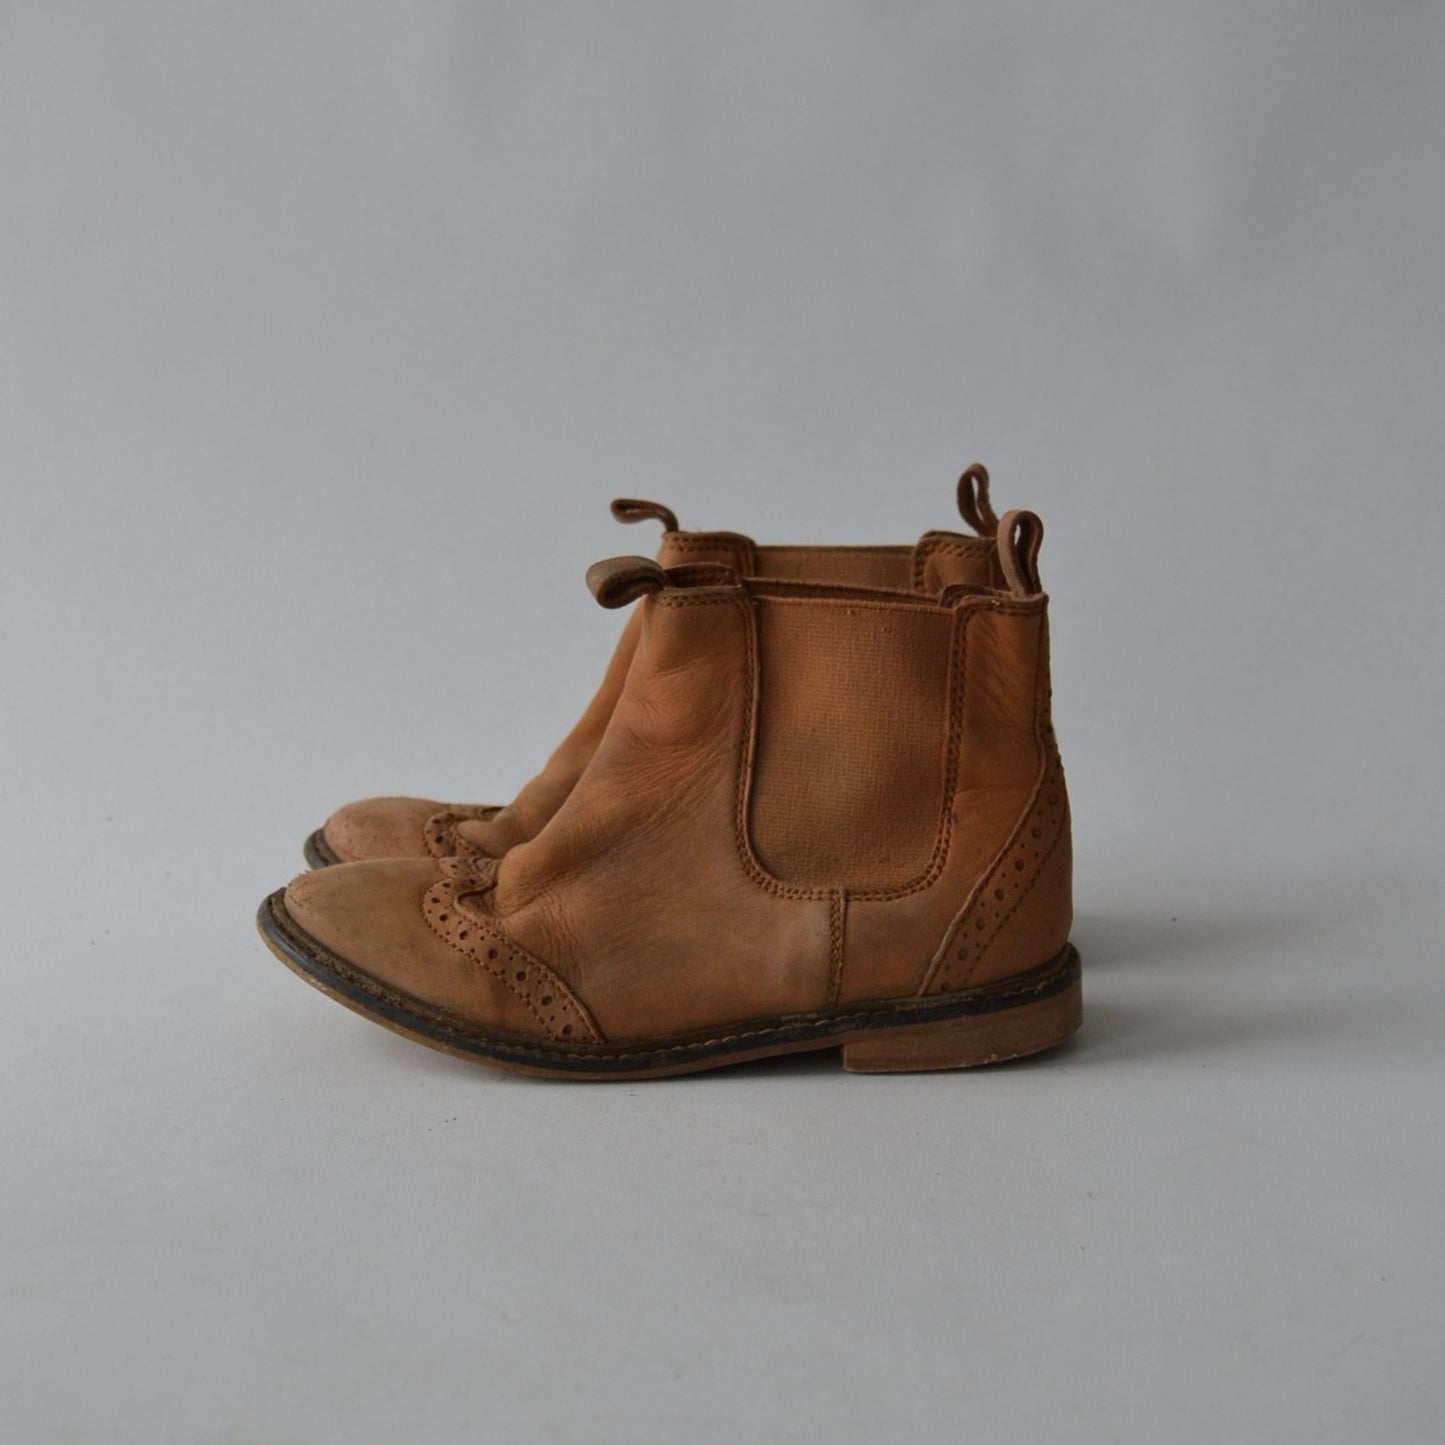 H&M Beige Leather Boots Shoe Size 11.5 (jr)